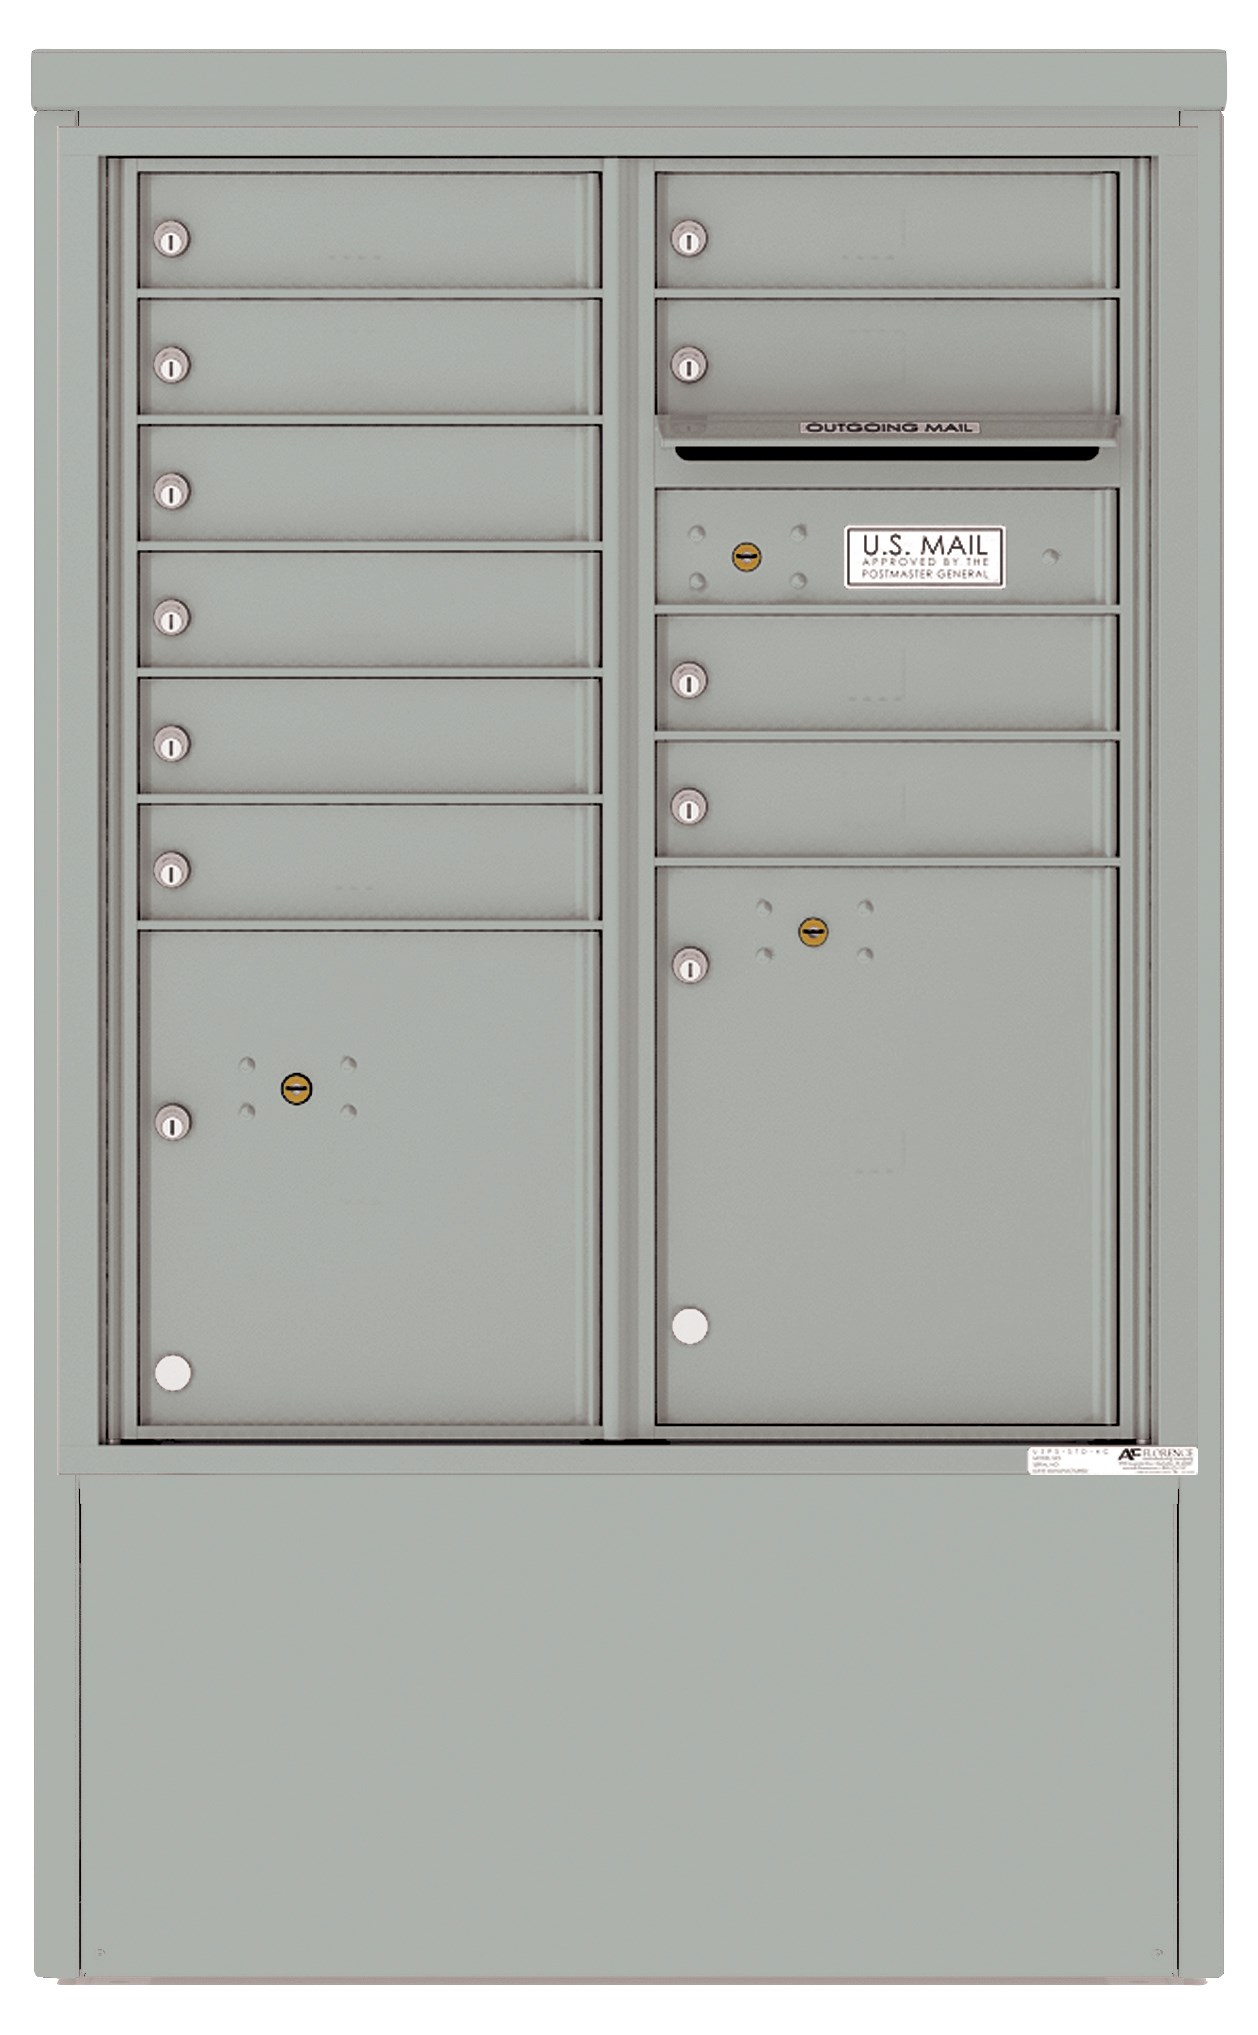 4CADD-10-D 4C Horizontal Depot Mailbox Silver Speck